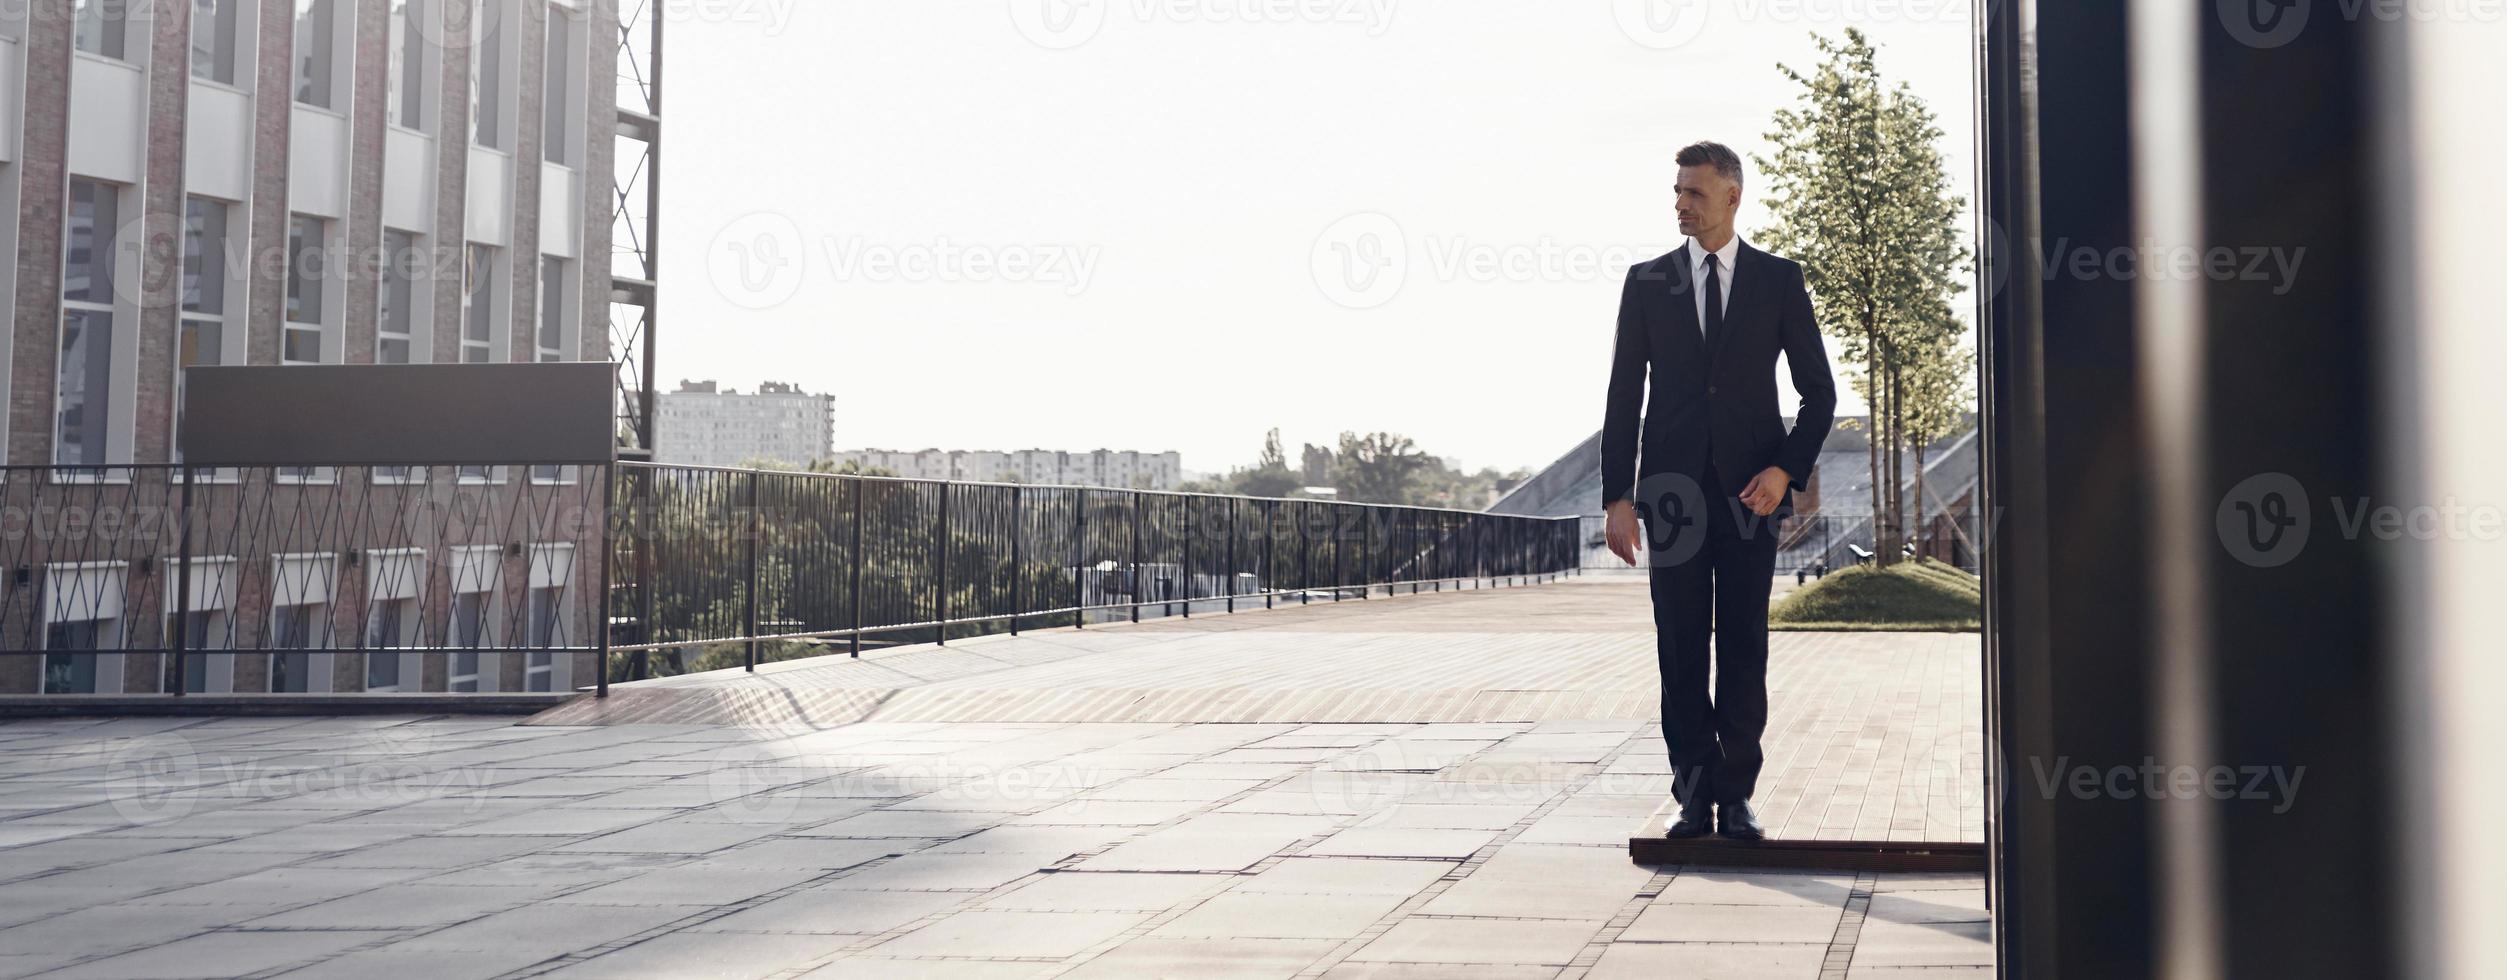 homme d'affaires mature confiant marchant près d'un immeuble de bureaux à l'extérieur photo